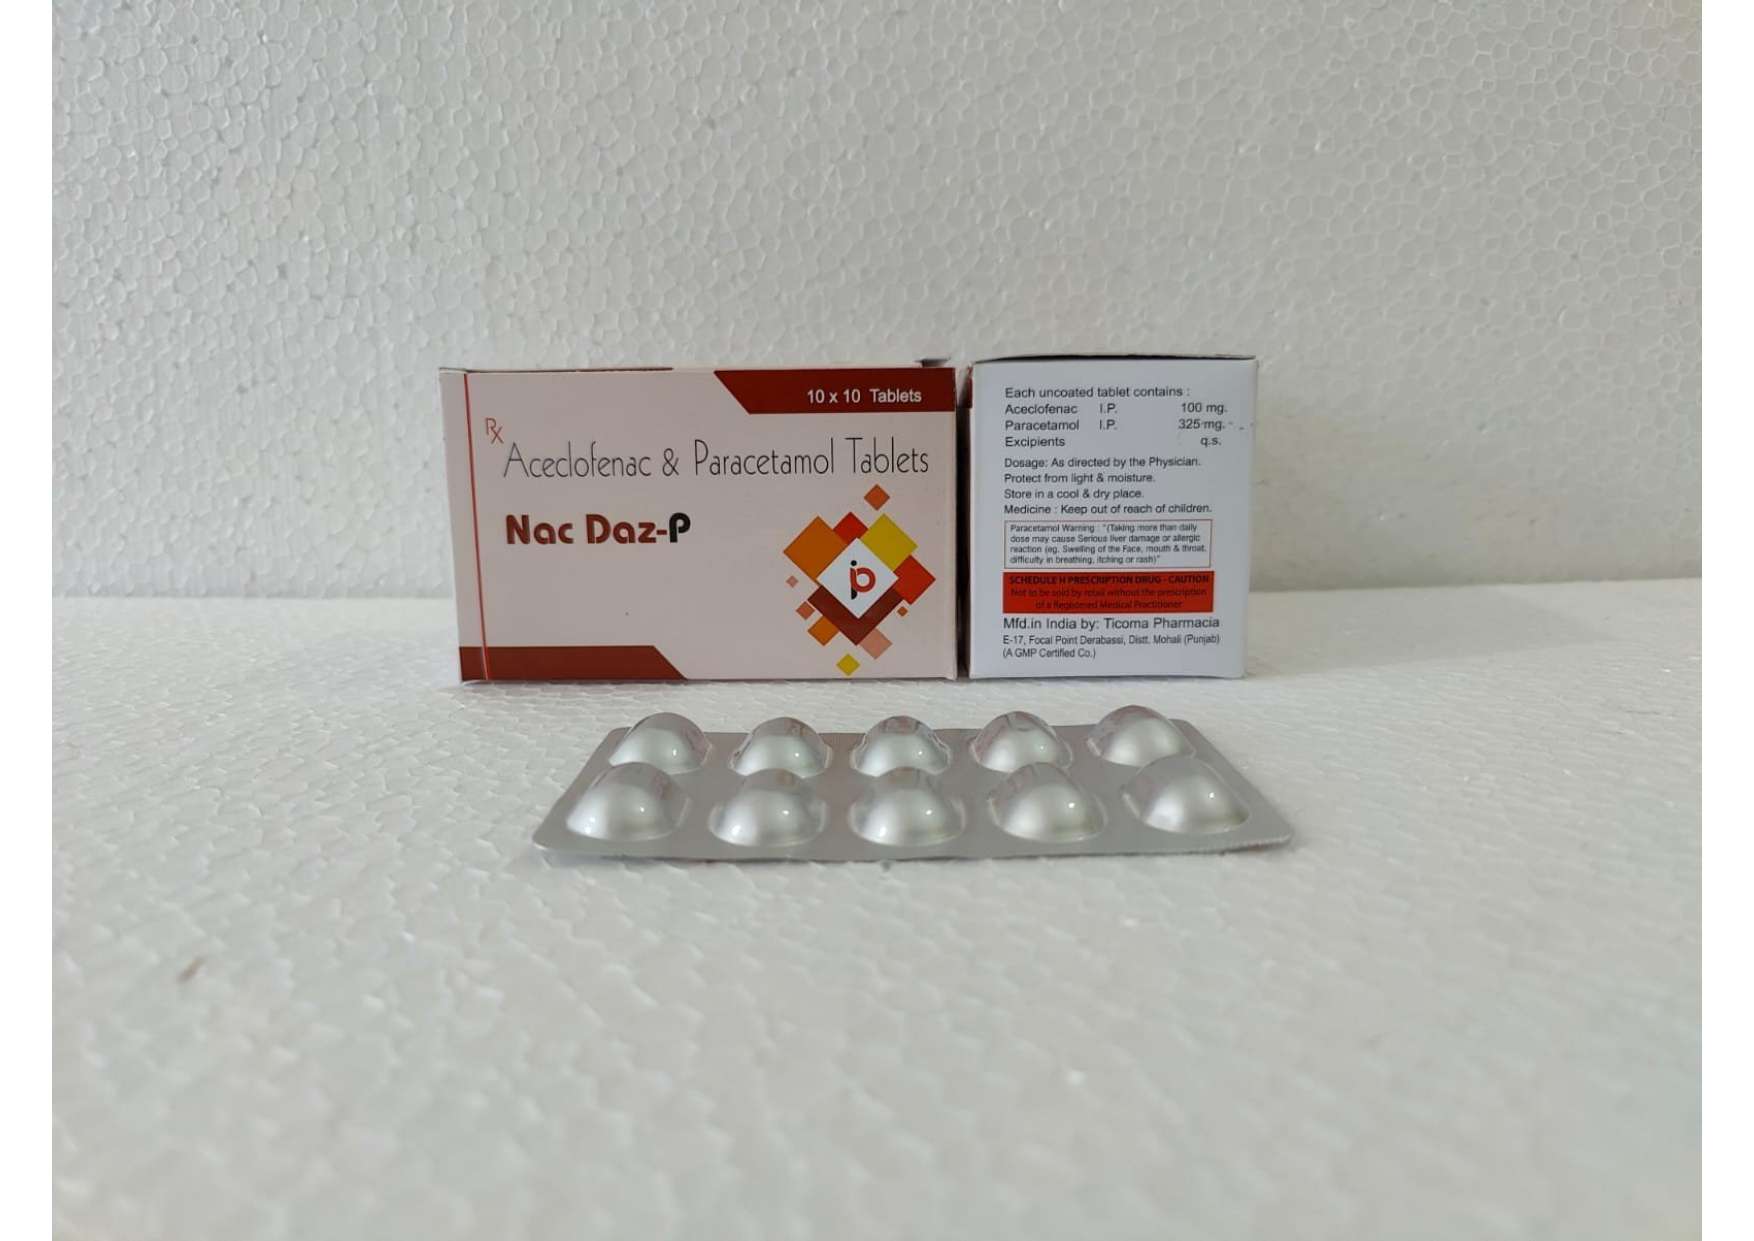 aceclofenac
100mg+paracetamol
325 mg